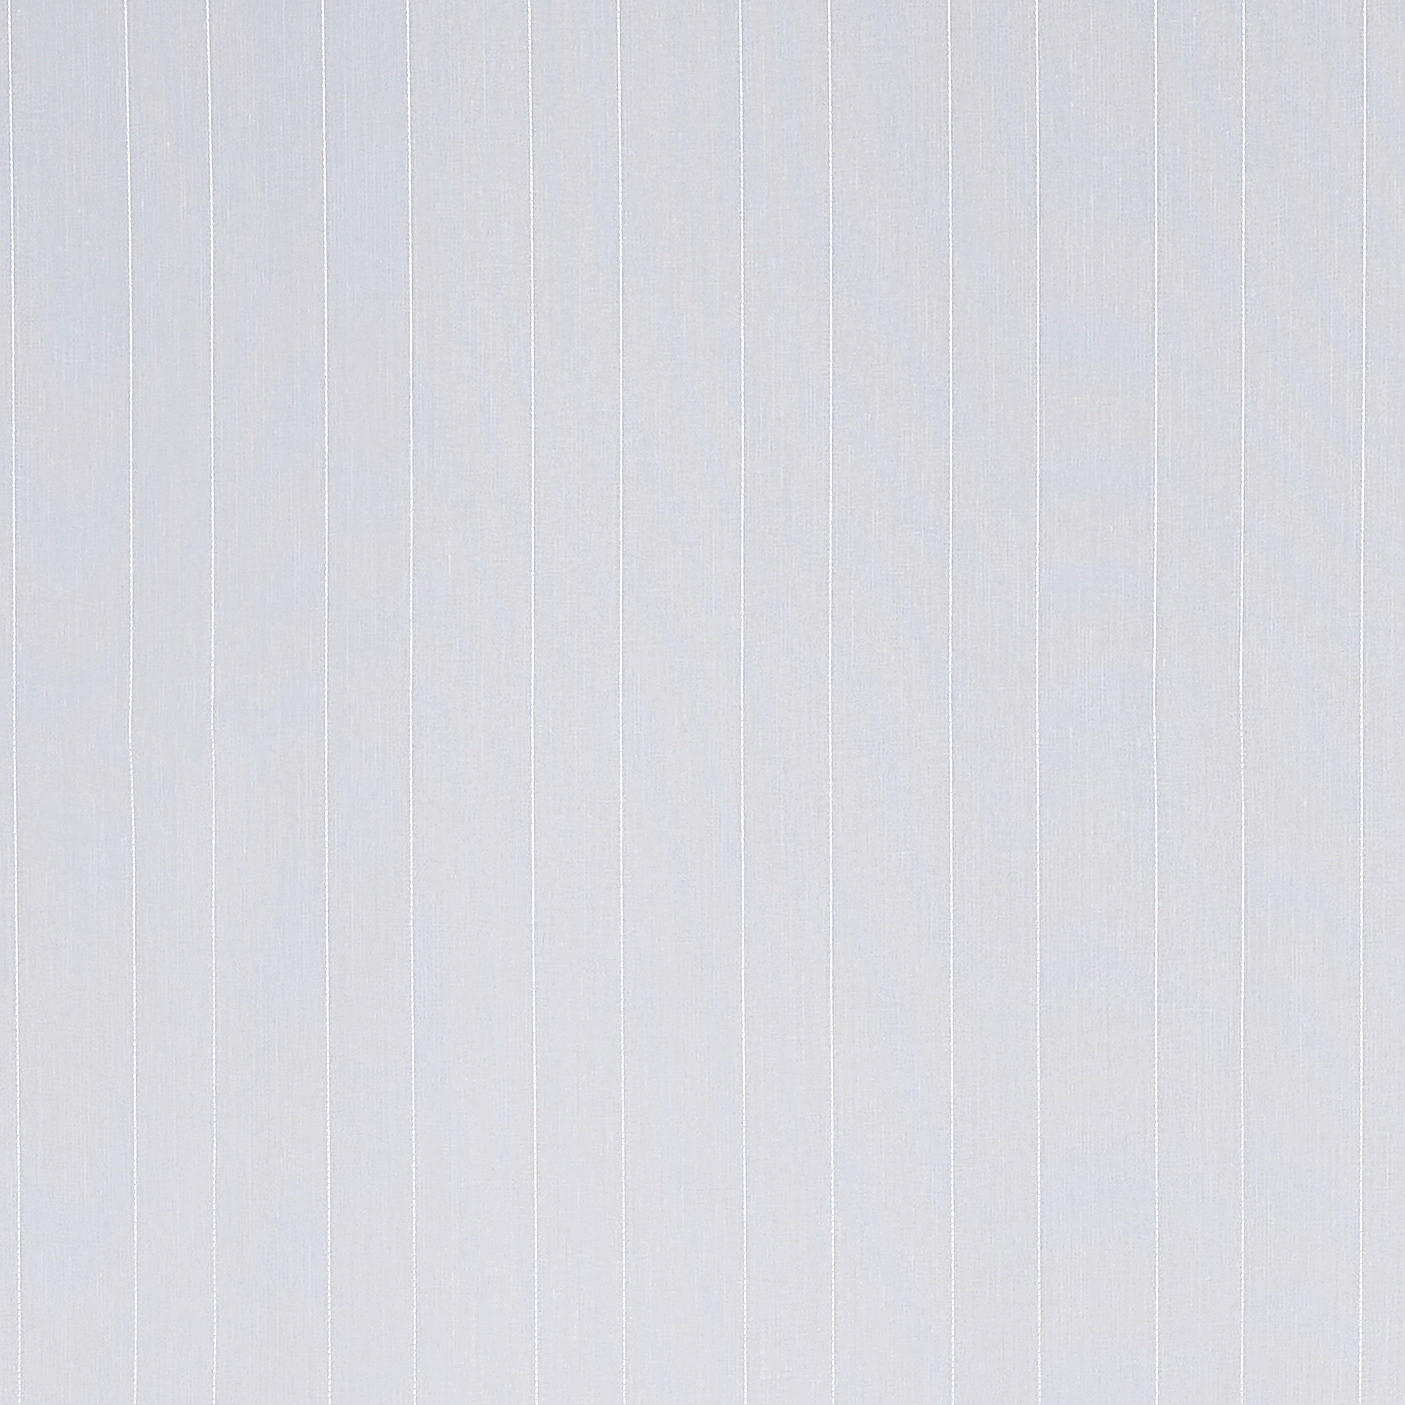 ZÁCLONA, priehľadné,  - biela, Basics, textil (300cm) - Esposa